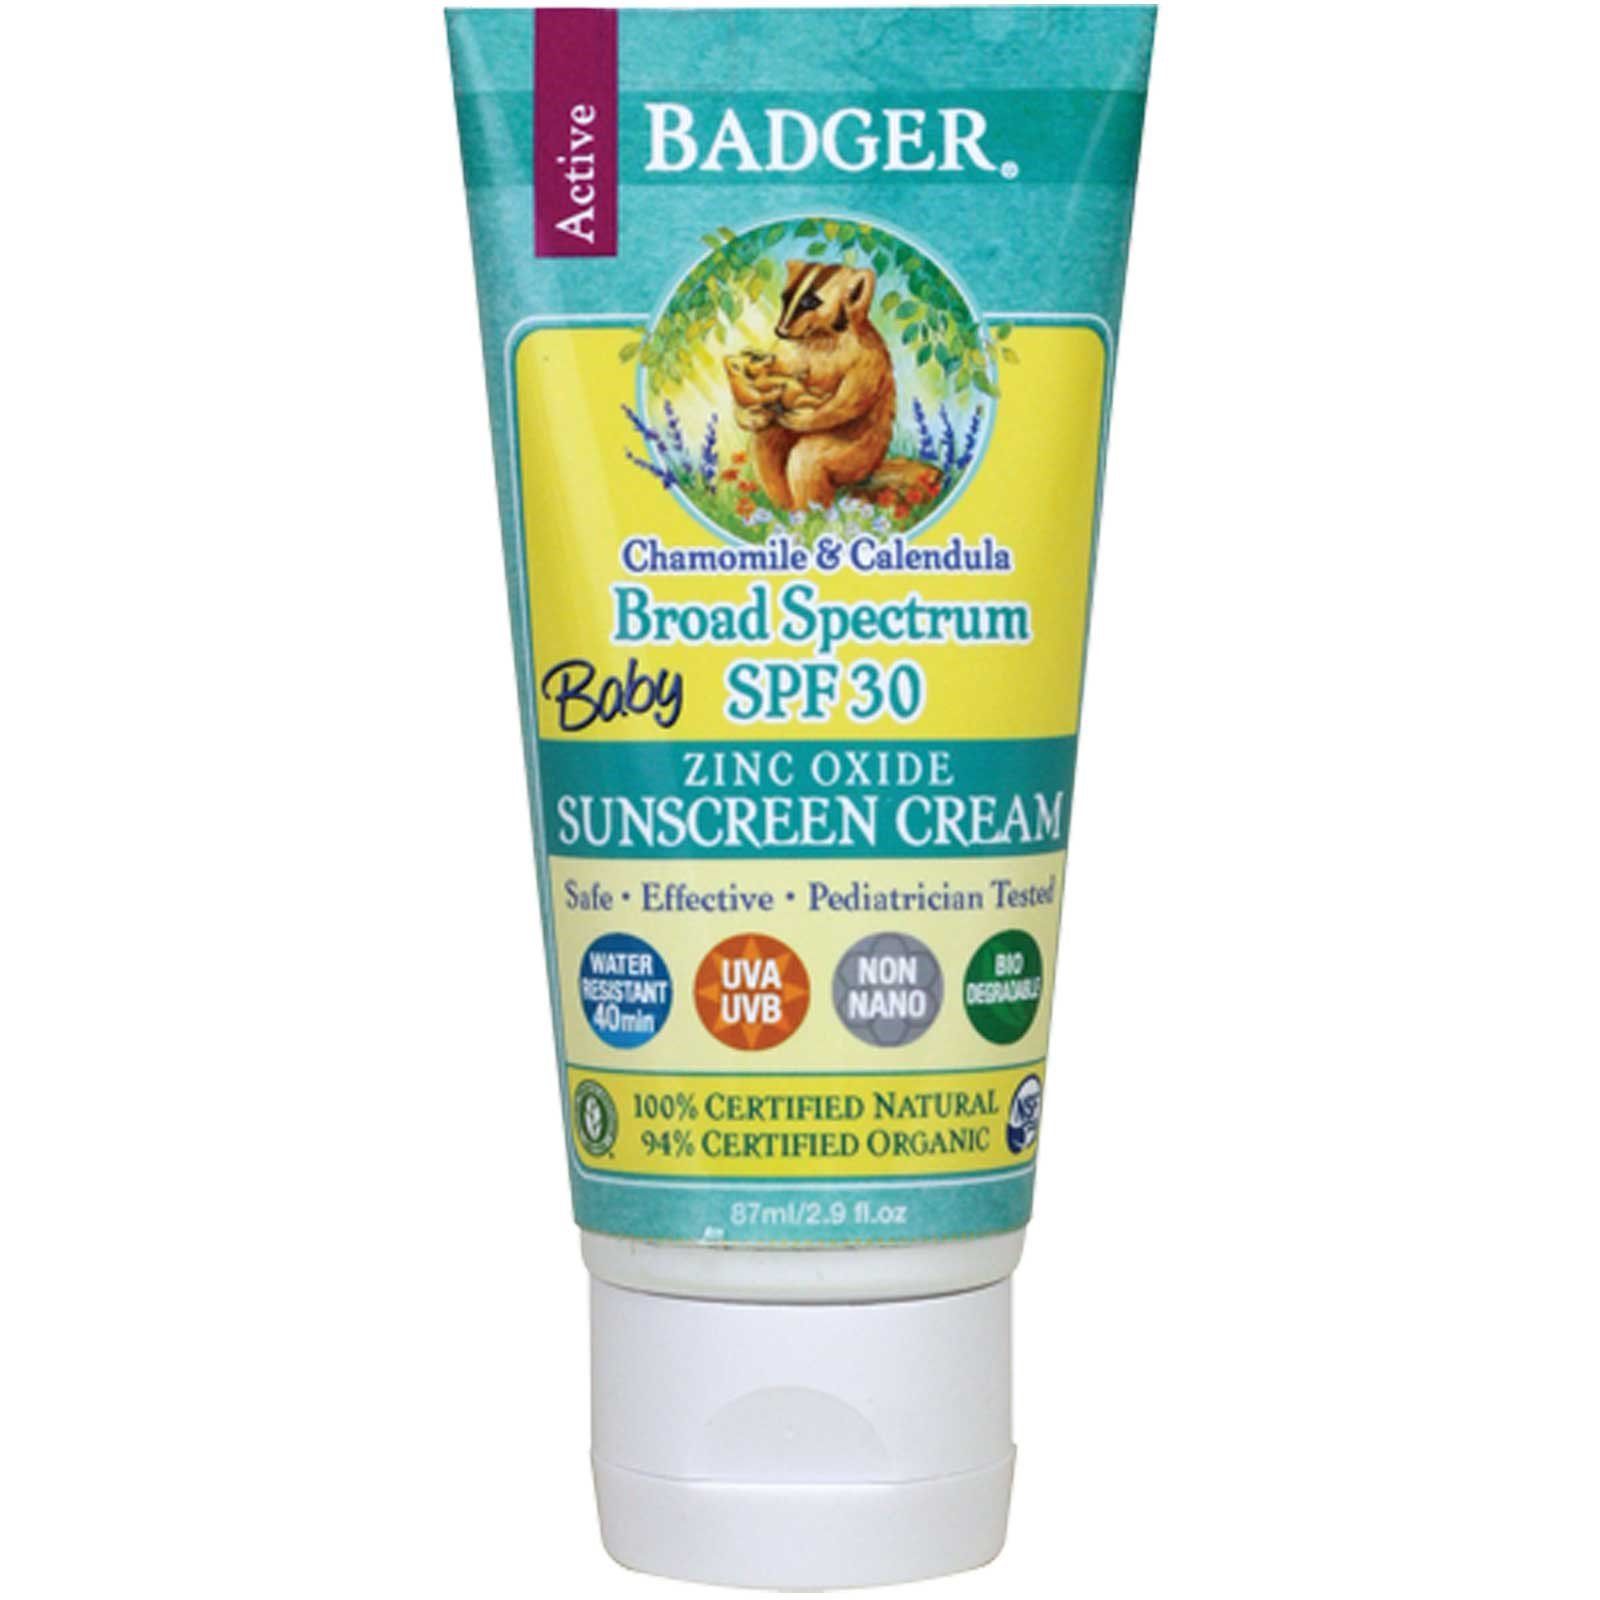 Spf крем для детей. Badger солнцезащитный крем 30 SPF. Badger солнцезащитный крем для детей. БАДГЕР крем солнцезащитный для детей. Badger Company, Zinc Oxide Sunscreen Cream, SPF 30.